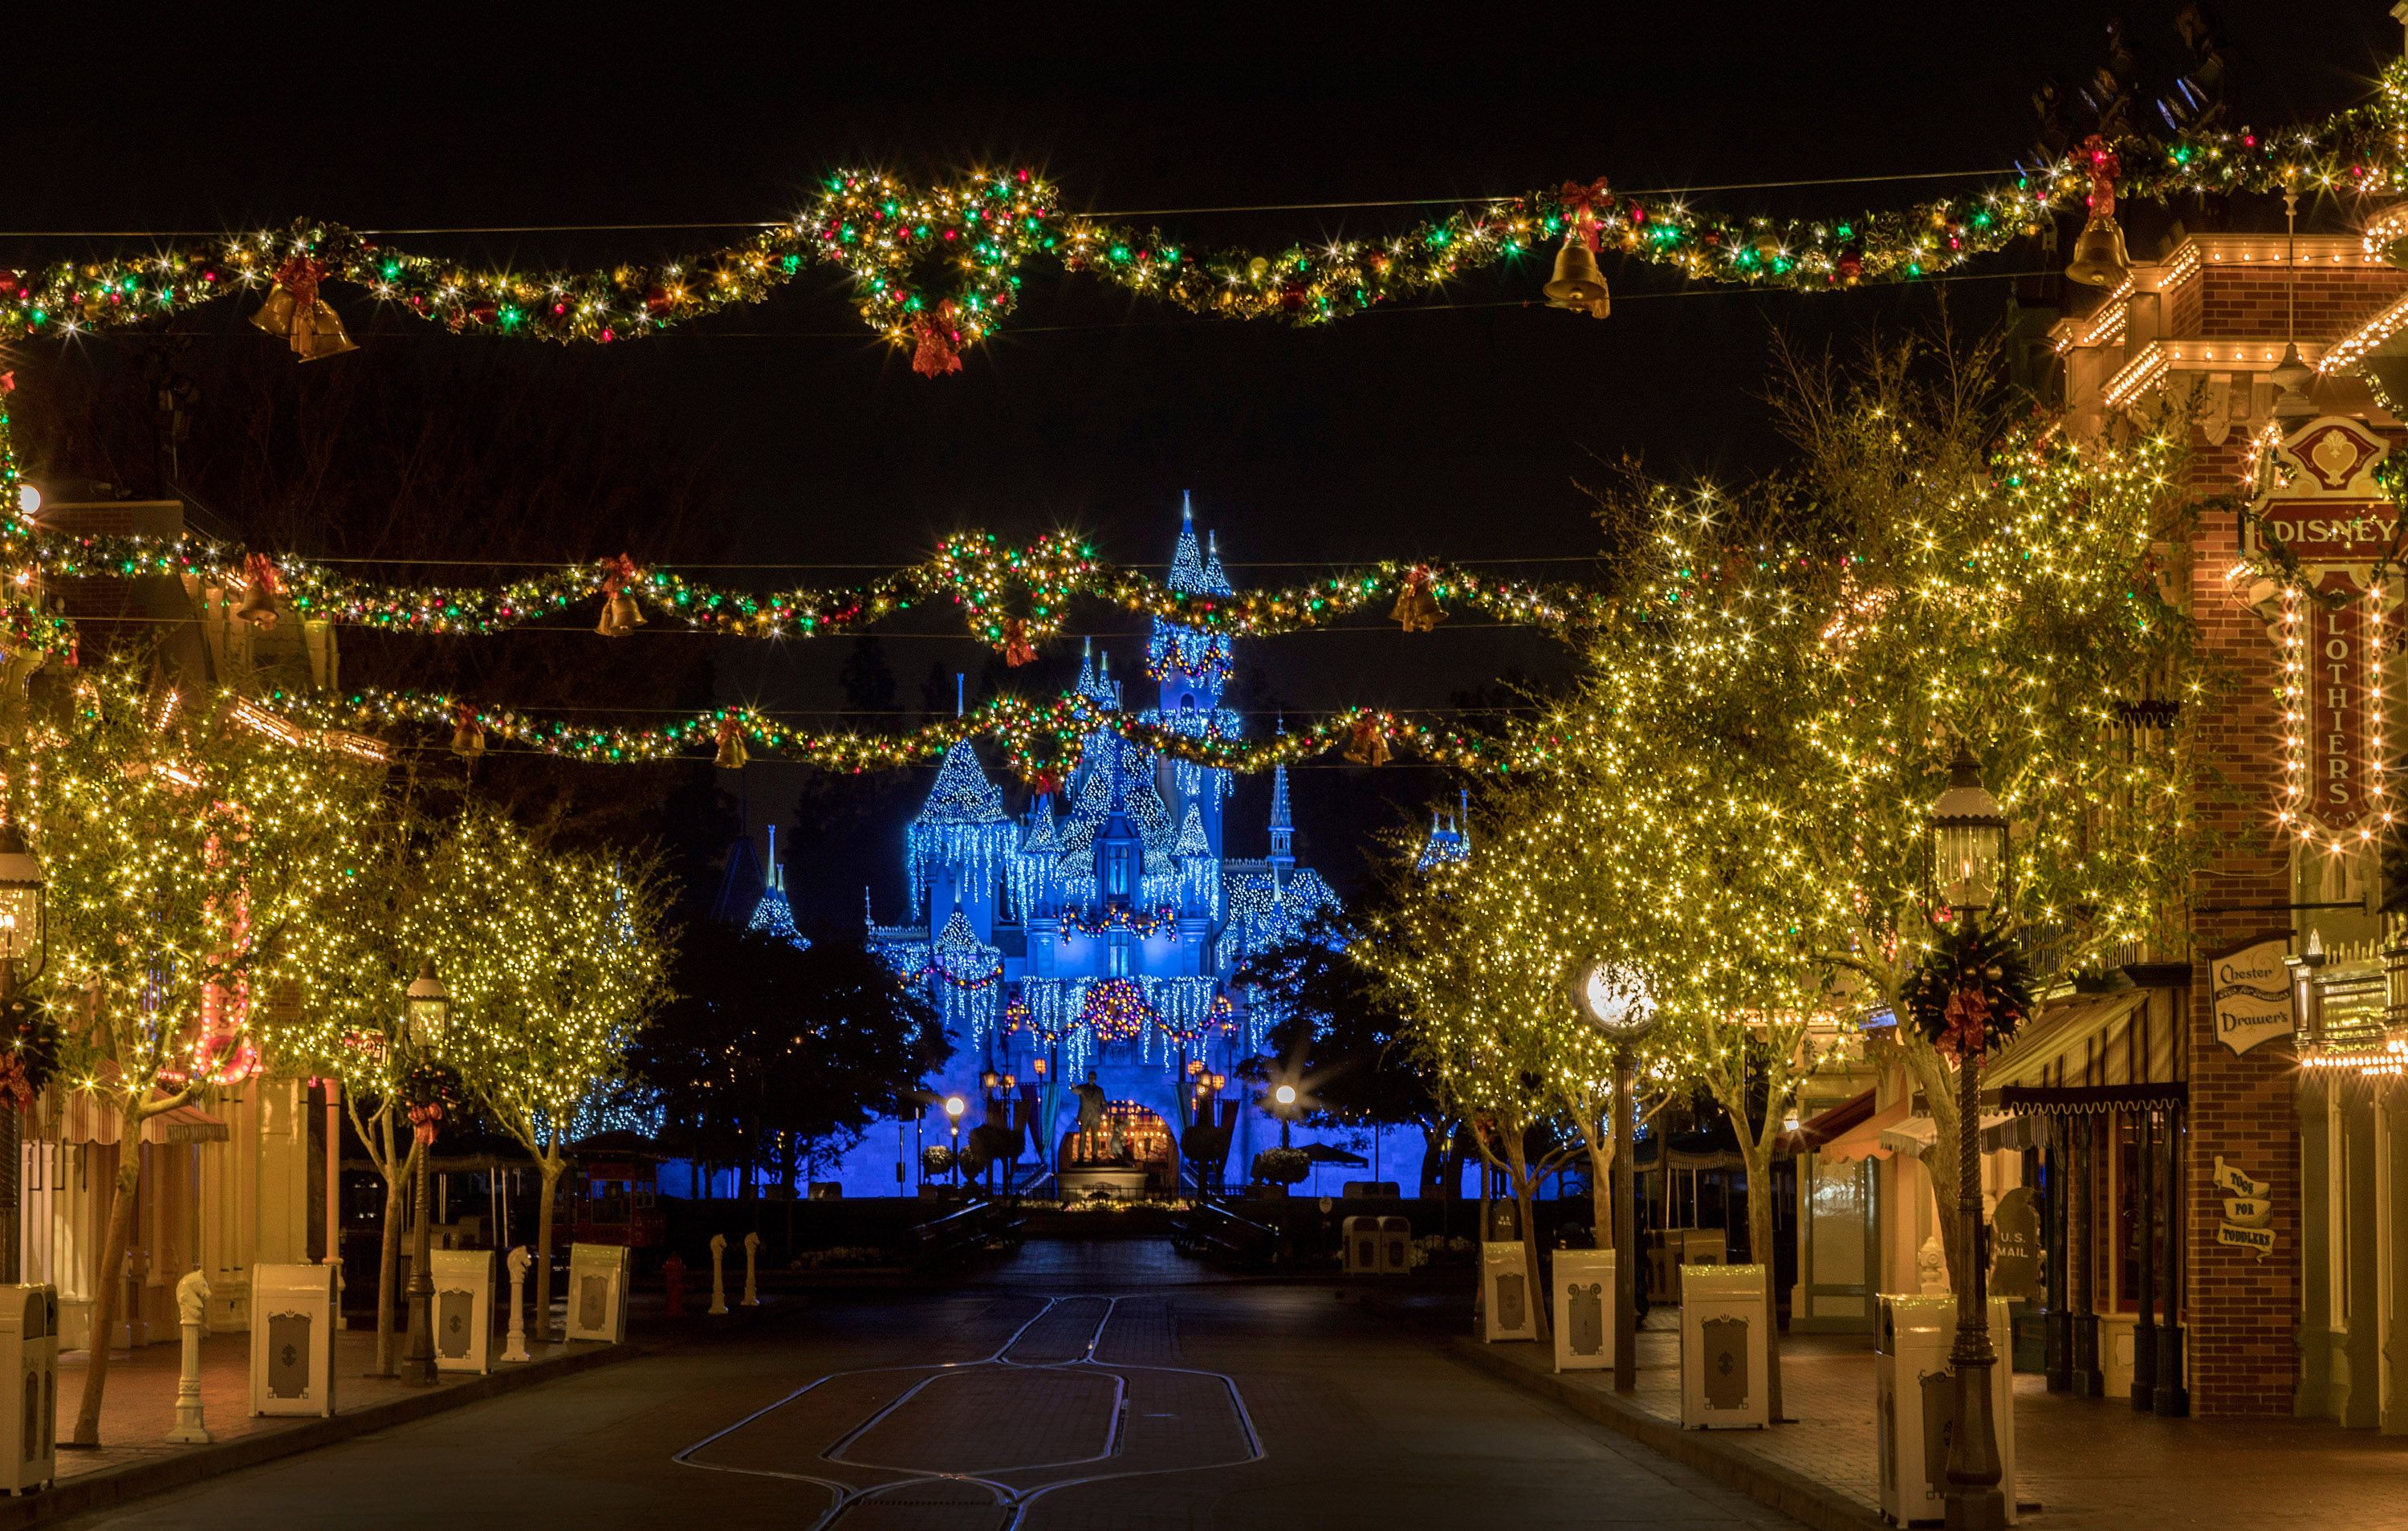 Bạn có thể mua các đồ trang trí Giáng Sinh tại Disneyland hay không?